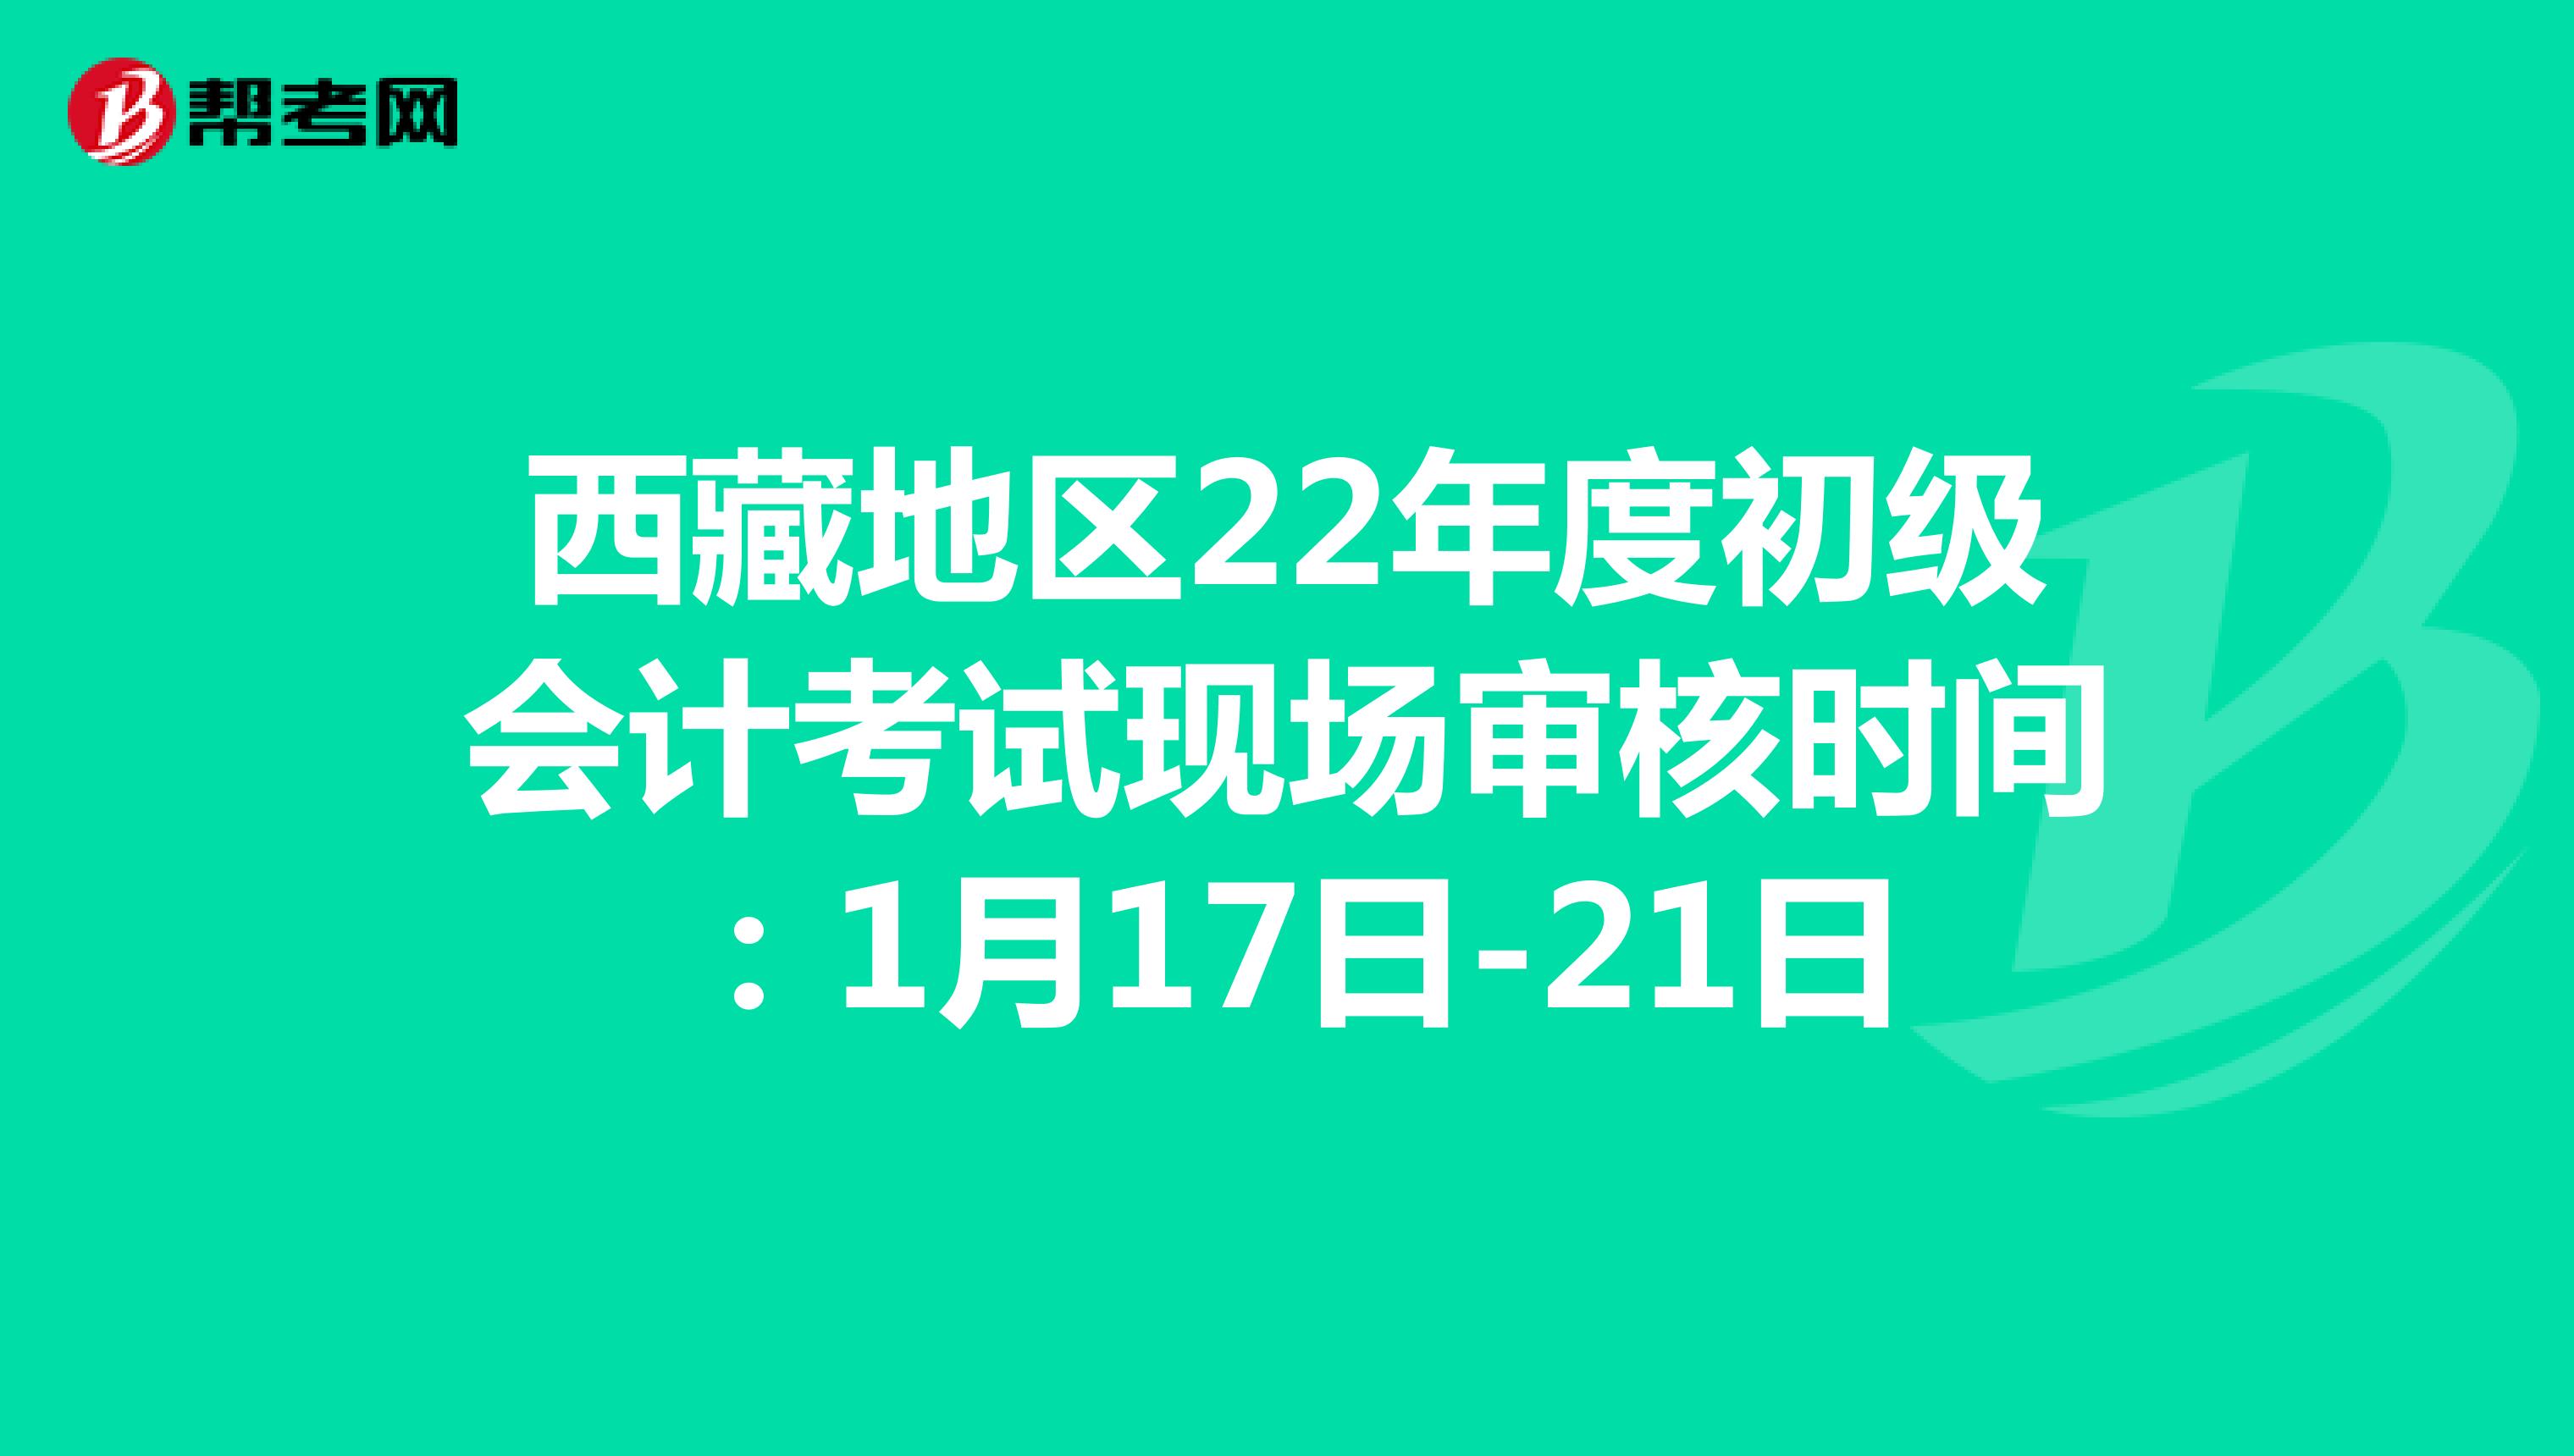 西藏地区22年度初级会计考试现场审核时间：1月17日-21日